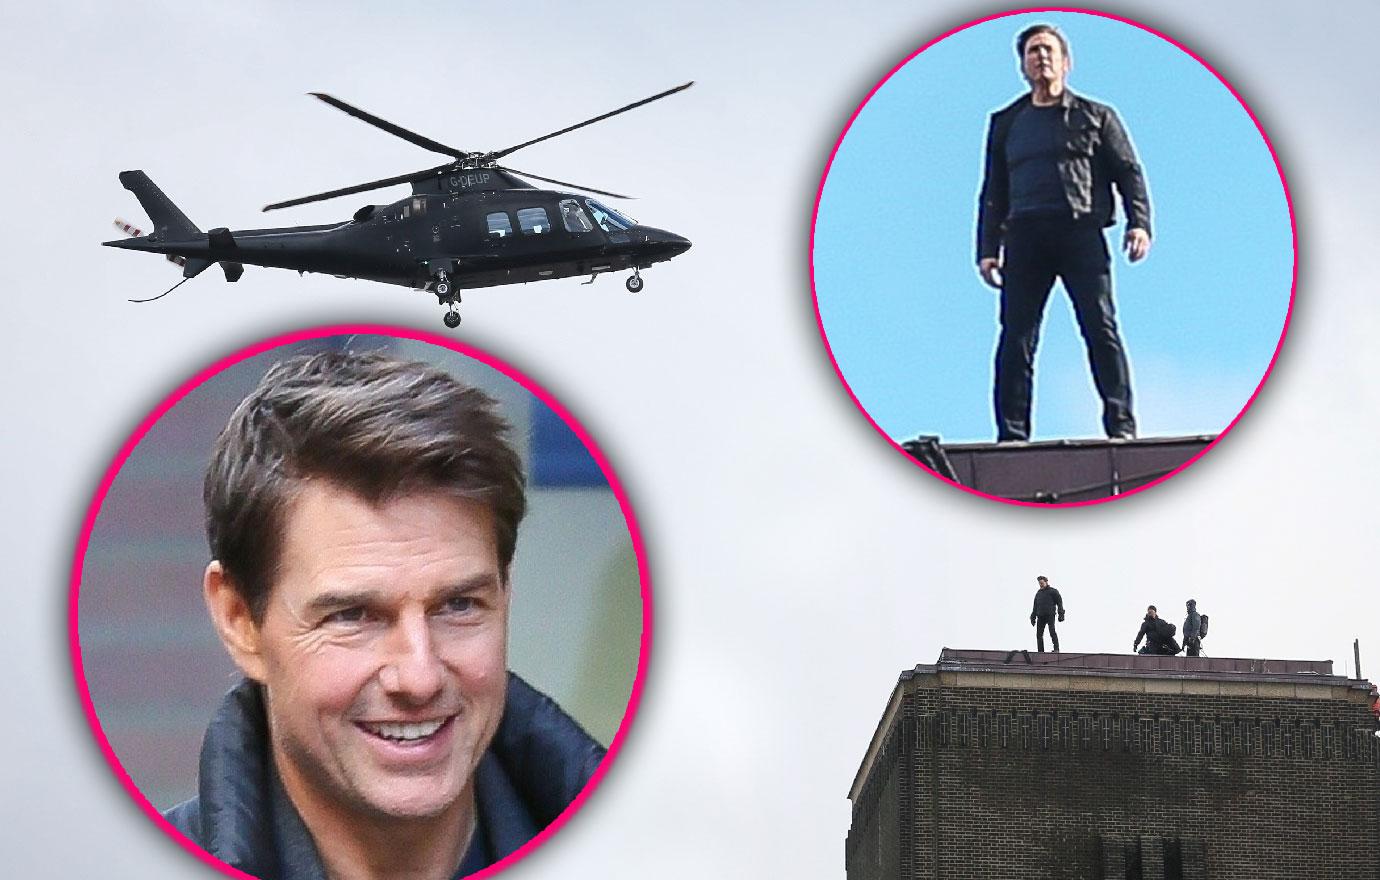 Tom Cruise Back On Mission Impossible Set After Broken AnkleTom Cruise